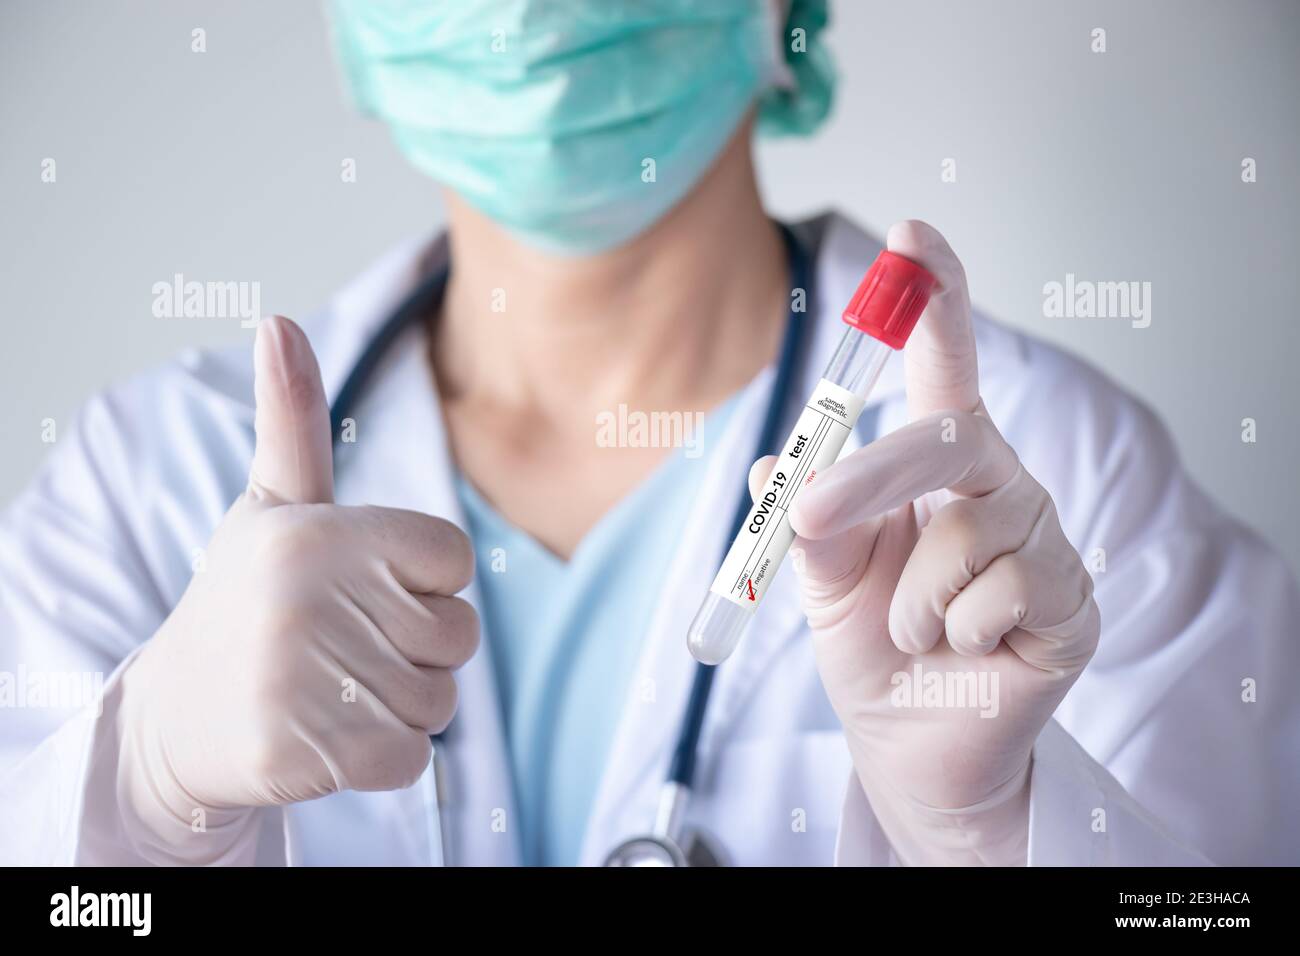 Prueba de coronavirus COVID-19. Doctor mano sosteniendo tubo de prueba de infección con muestra de secreción nasal del paciente para el resultado negativo etiqueta y pulgar hacia arriba gesto Foto de stock